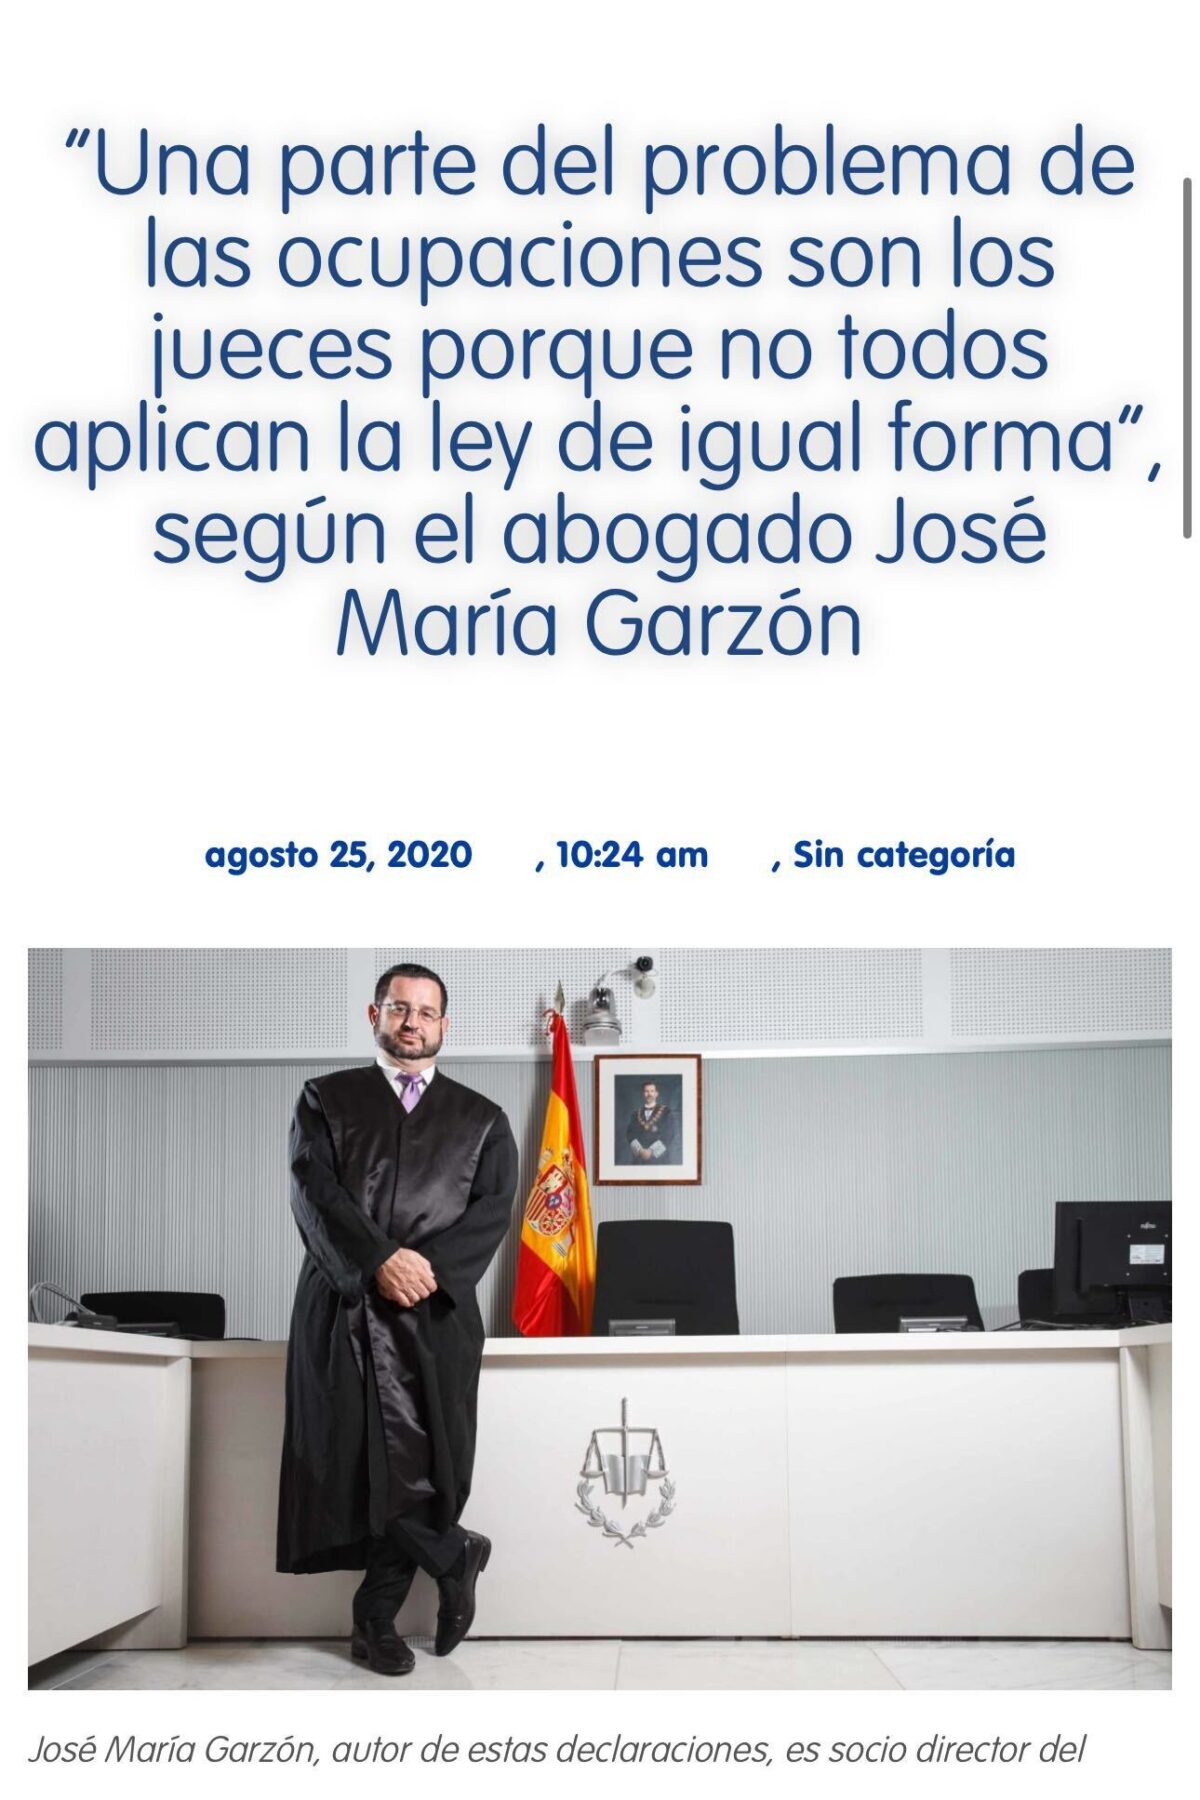 JOSE MARIA GARZON Y LAS OCUPACIONES